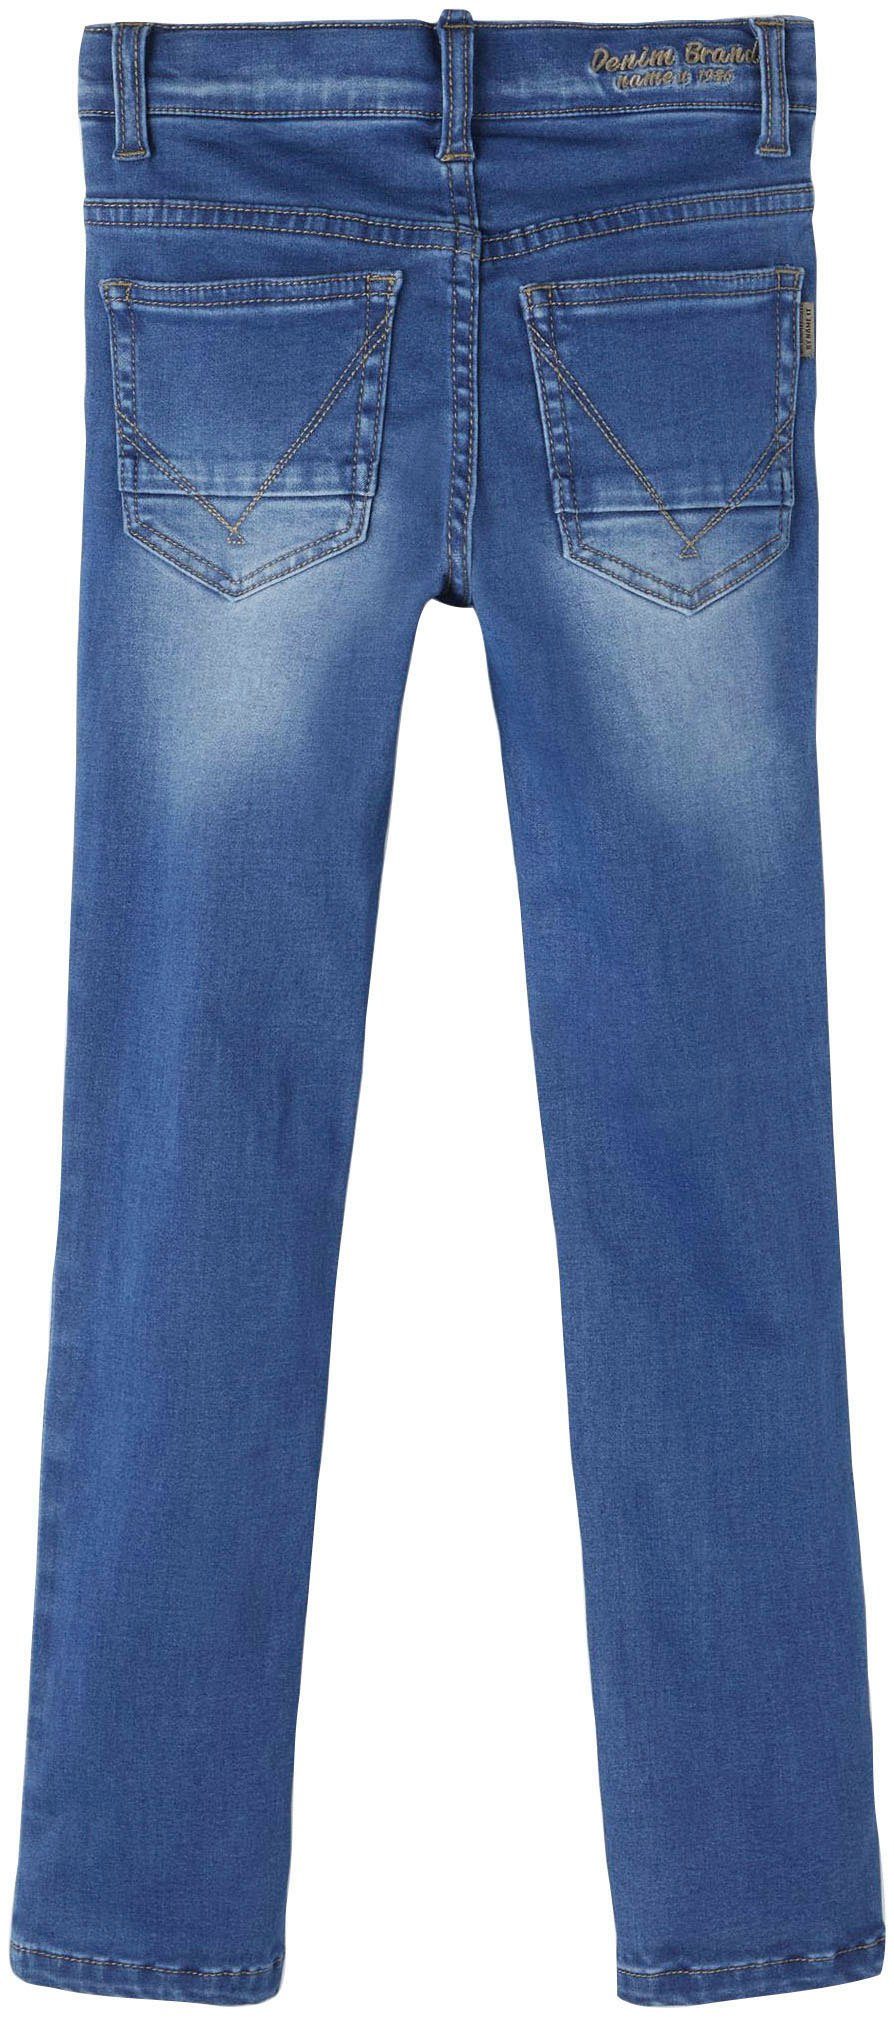 Stretch-Jeans Name Blau It